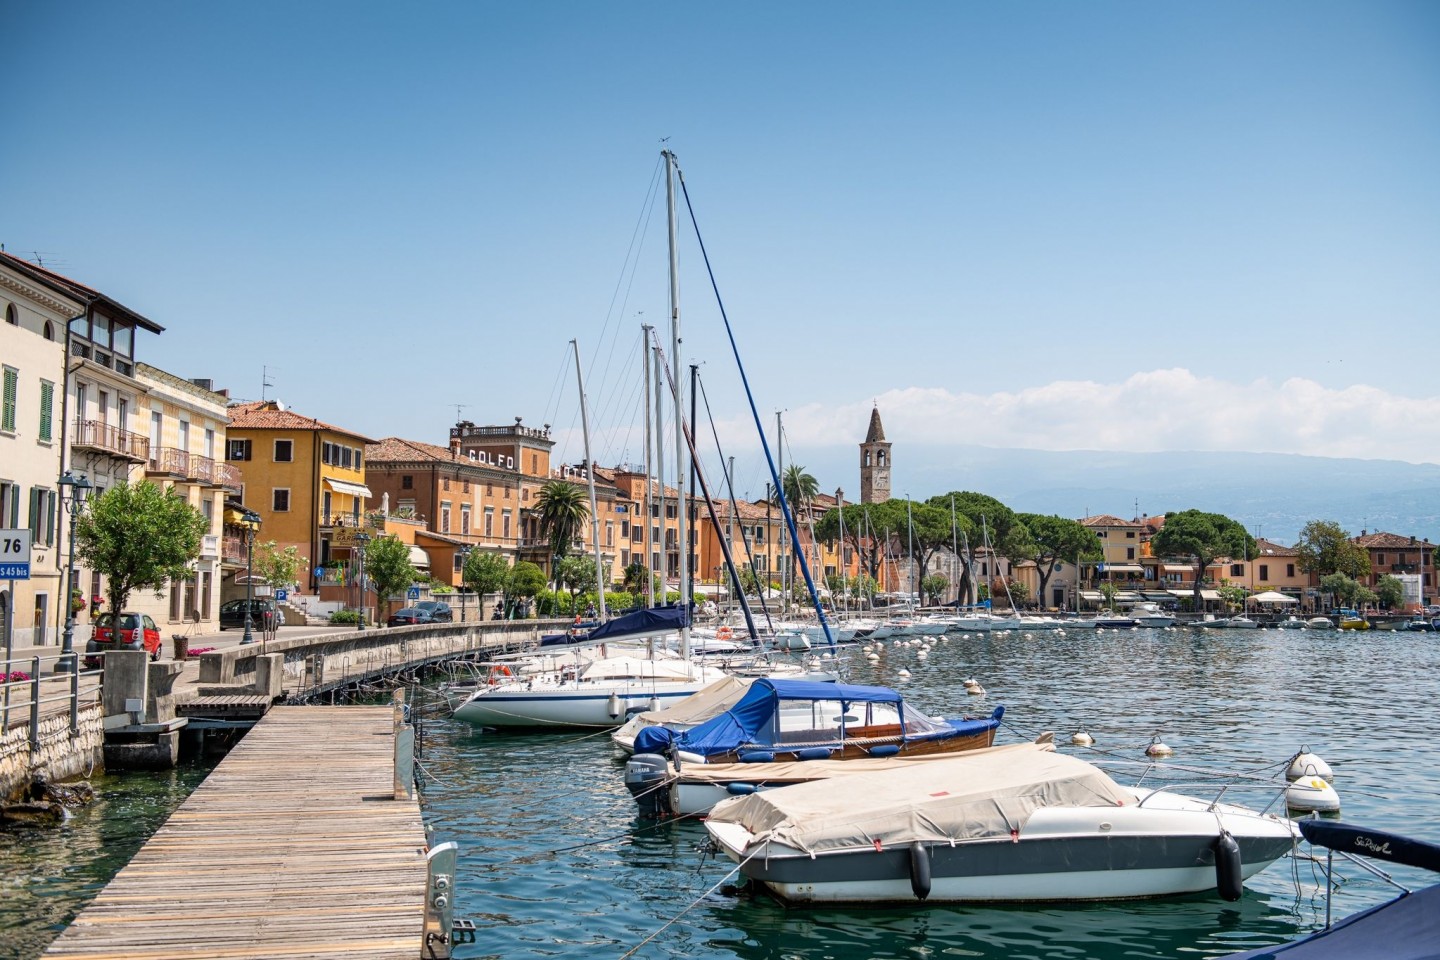 Boote liegen im Hafen des kleinen Ortes Maderno. Im Fall zweier Toter auf dem Gardasee nach einer mutmaßlichen Bootskollision ermittelt die italienische Polizei gegen zwei Deutsche aus Mün...